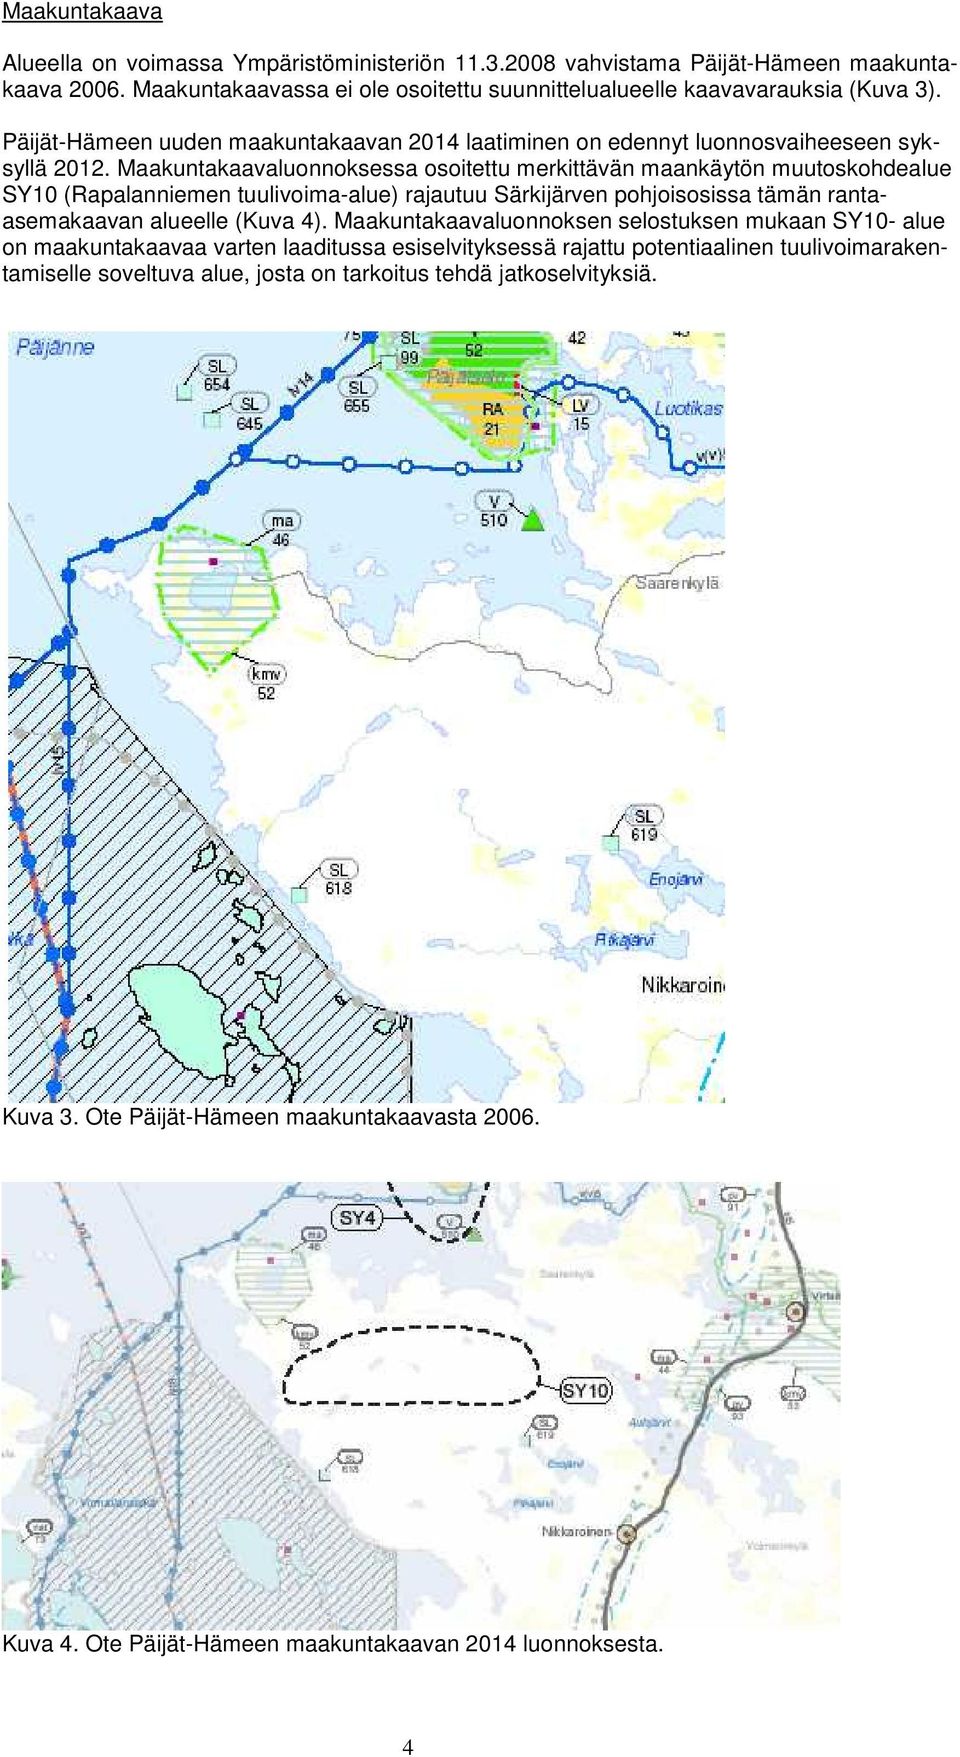 Maakuntakaavaluonnoksessa osoitettu merkittävän maankäytön muutoskohdealue SY10 (Rapalanniemen tuulivoima-alue) rajautuu Särkijärven pohjoisosissa tämän rantaasemakaavan alueelle (Kuva 4).